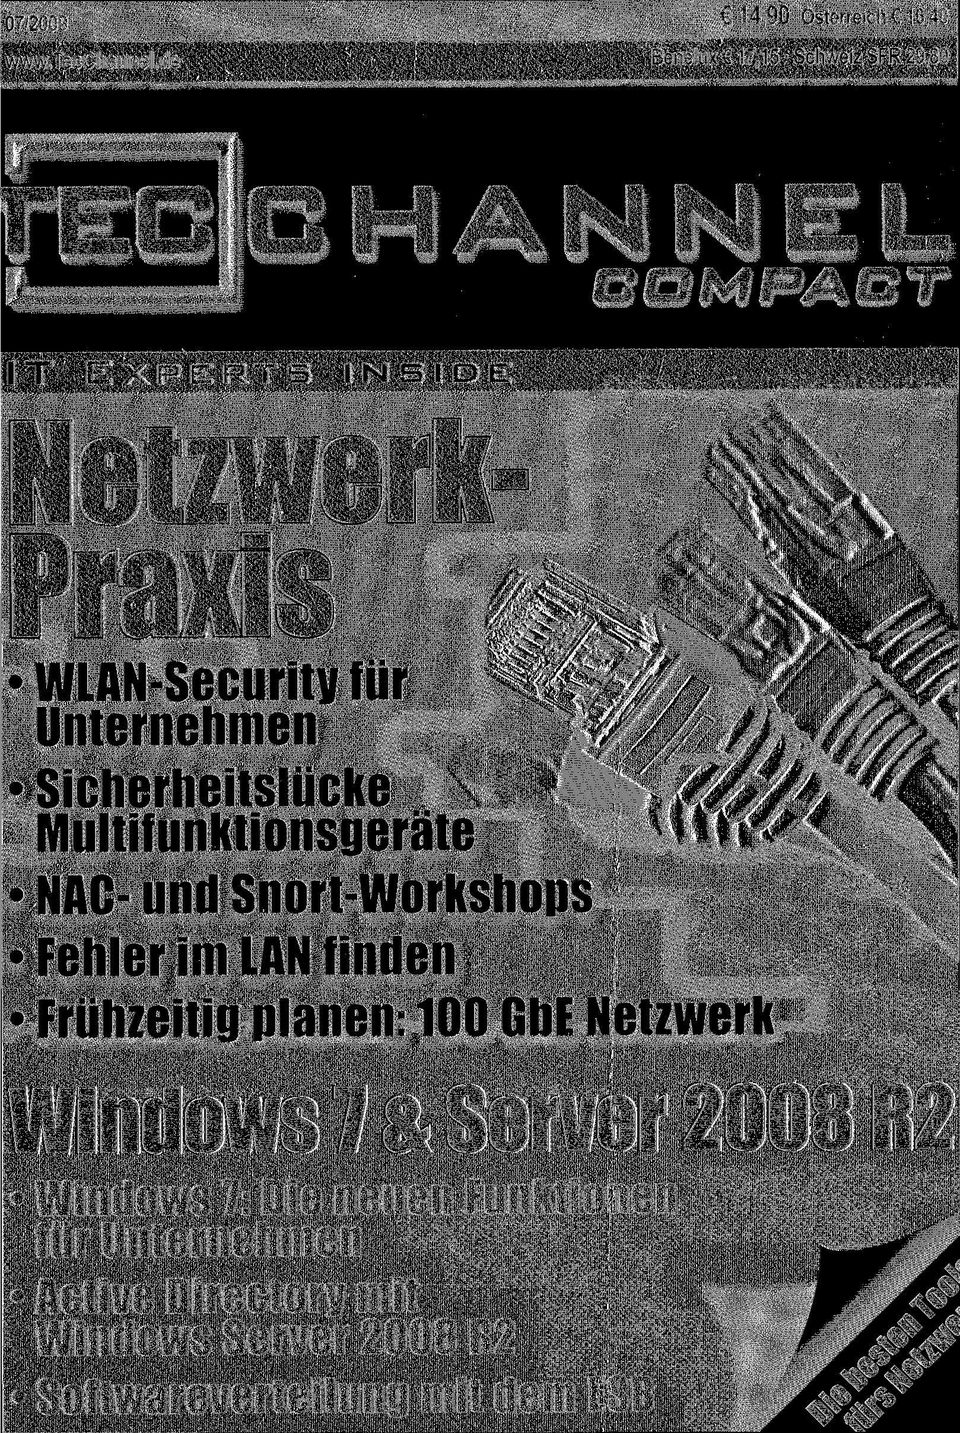 COMPACT Windows 7 a Server 2008 R2 Windows 7: Die neuen